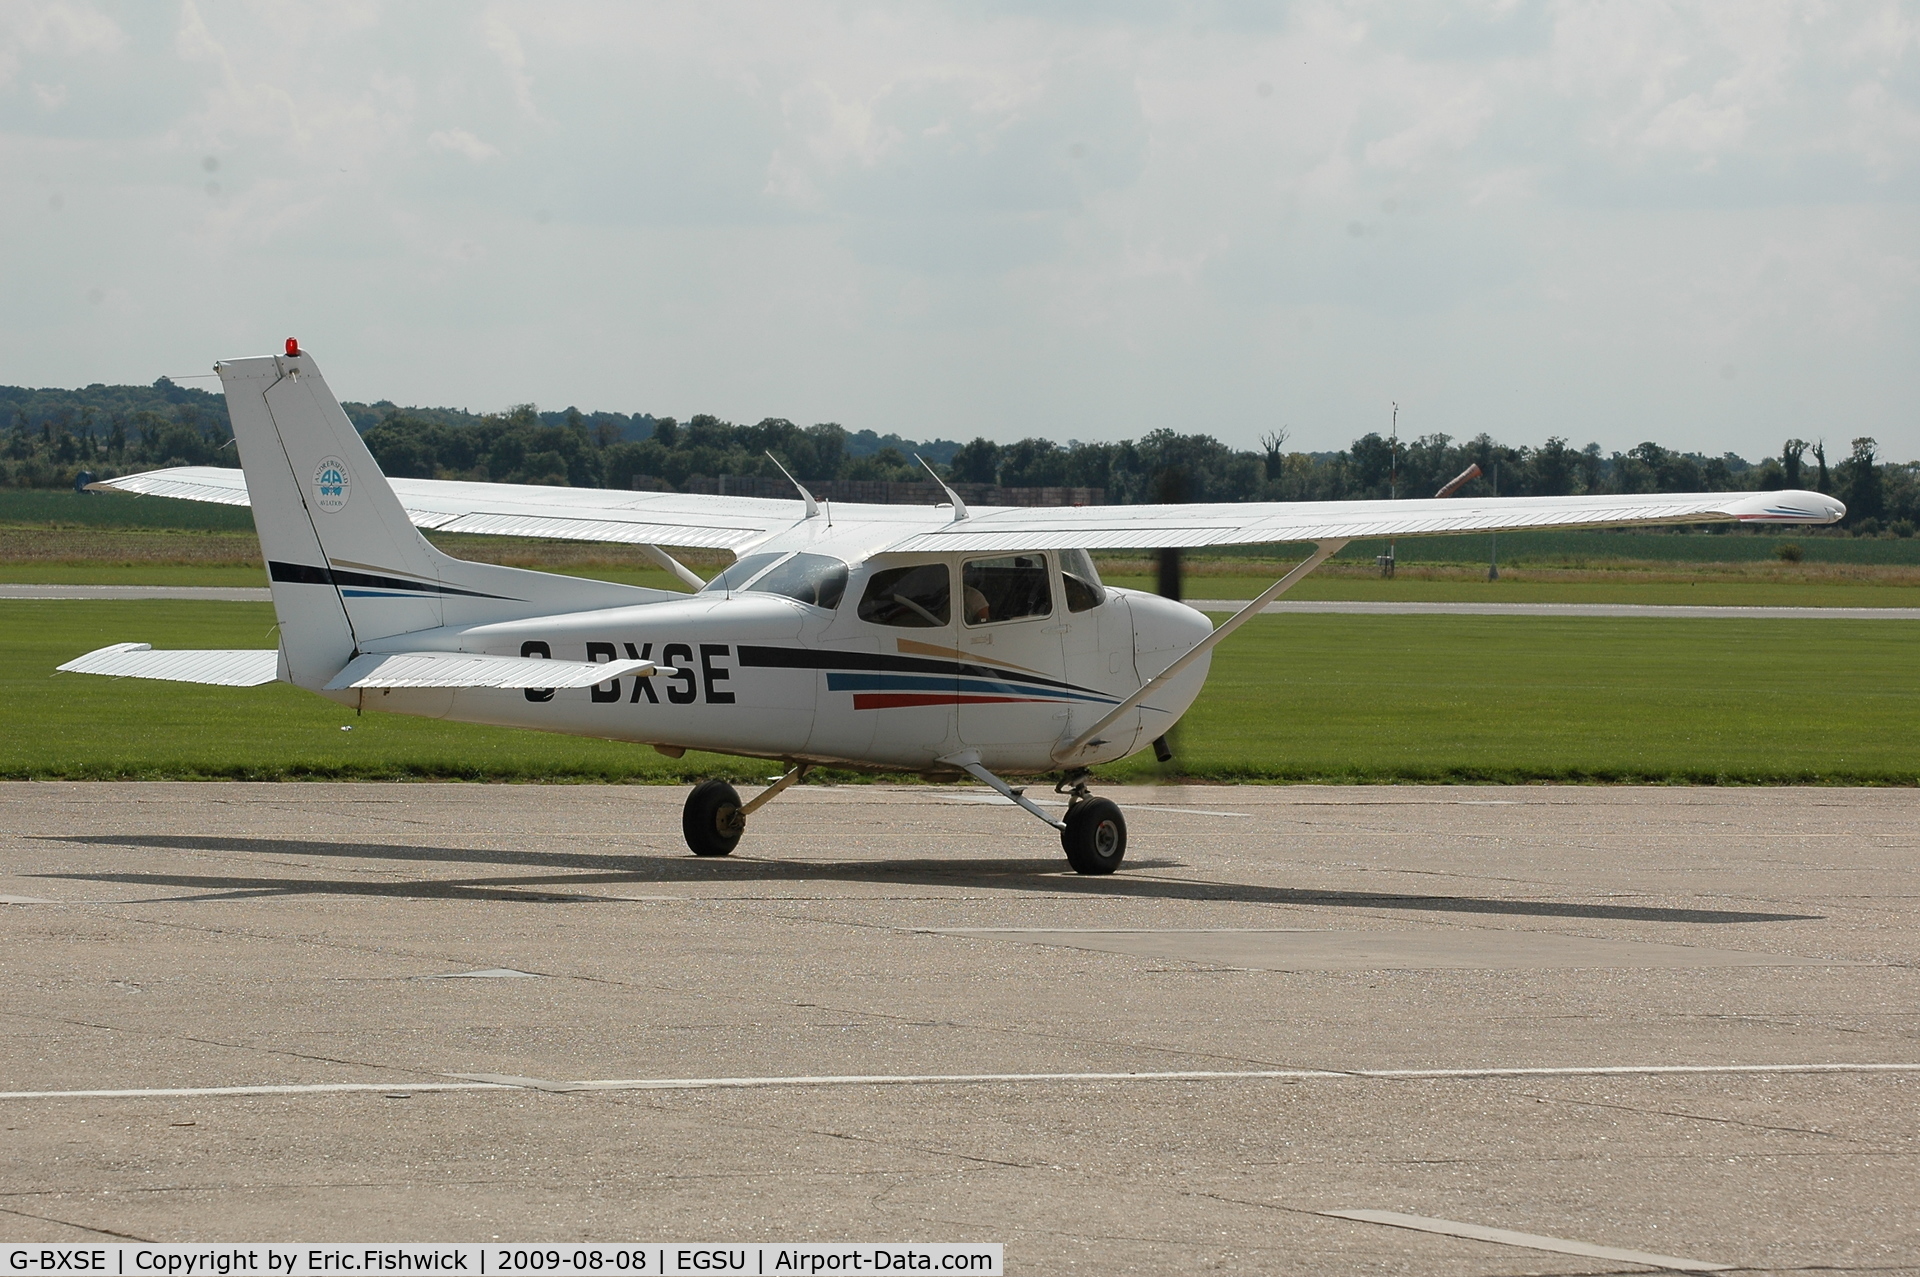 G-BXSE, 1998 Cessna 172R Skyhawk C/N 17280352, G-BXSE at Duxford